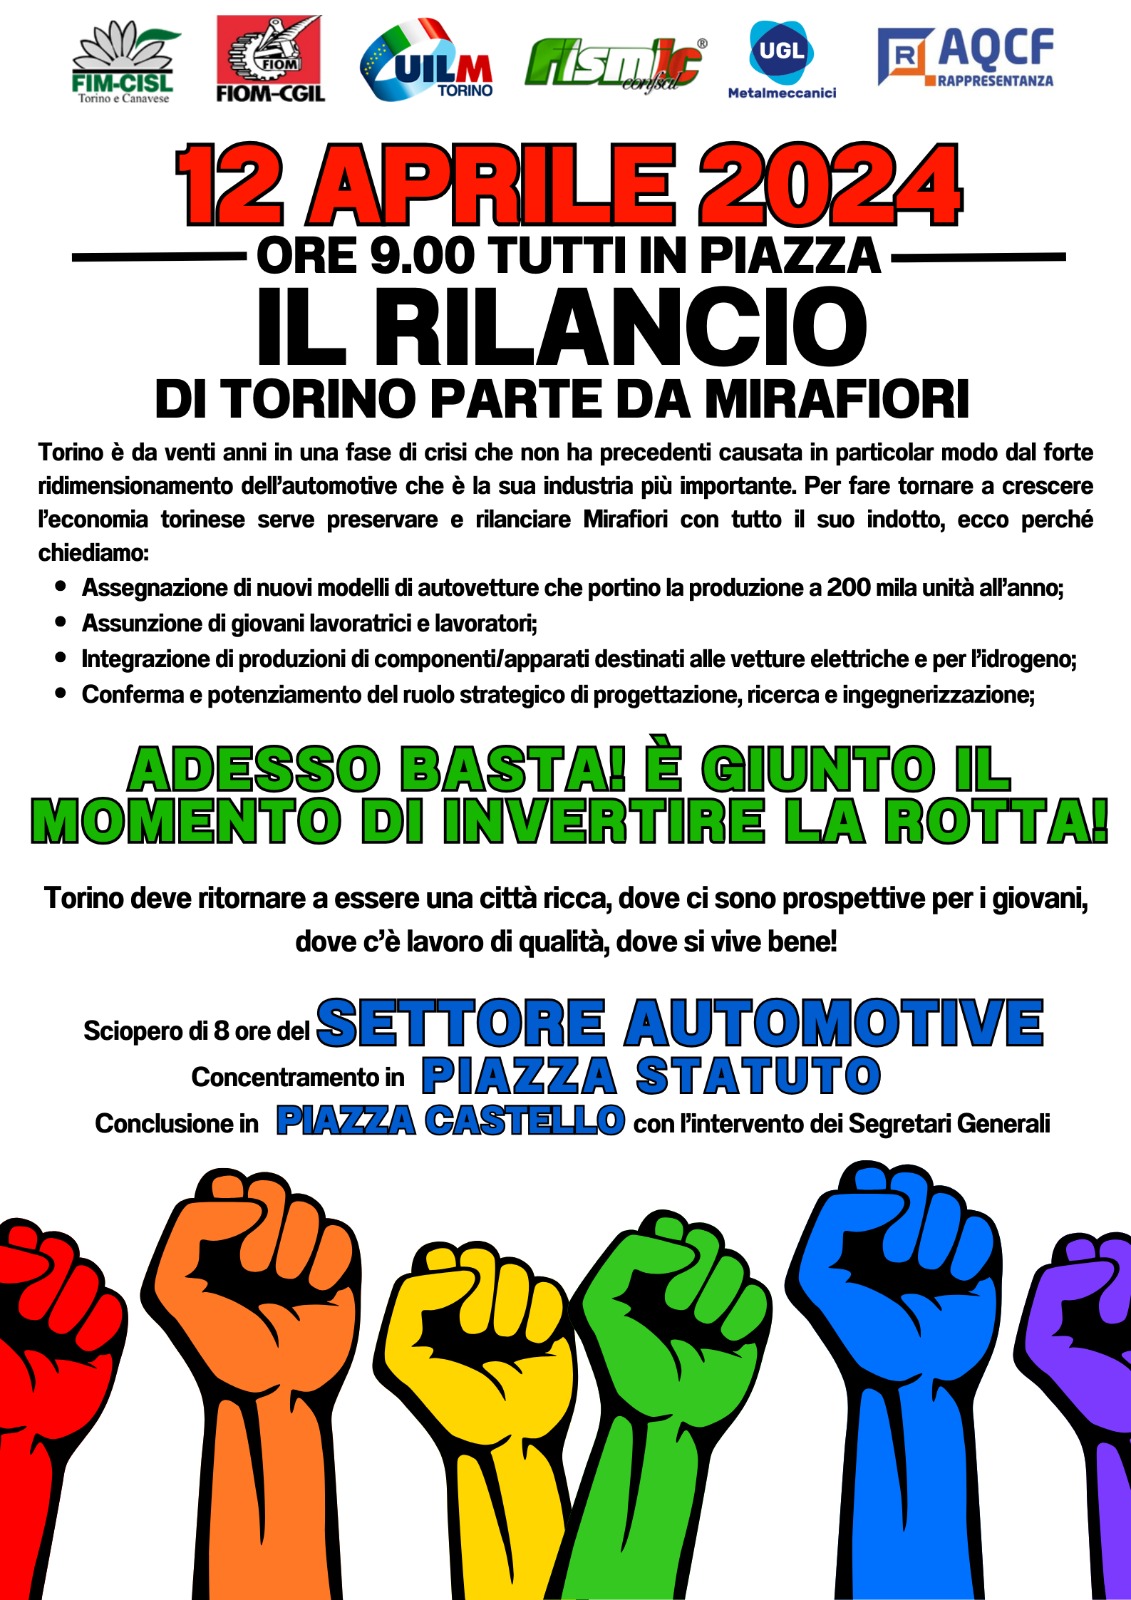 12/04, sciopero dei metalmeccanici con corteo da Piazza Statuto: il rilancio industriale di Torino parta da Mirafiori!